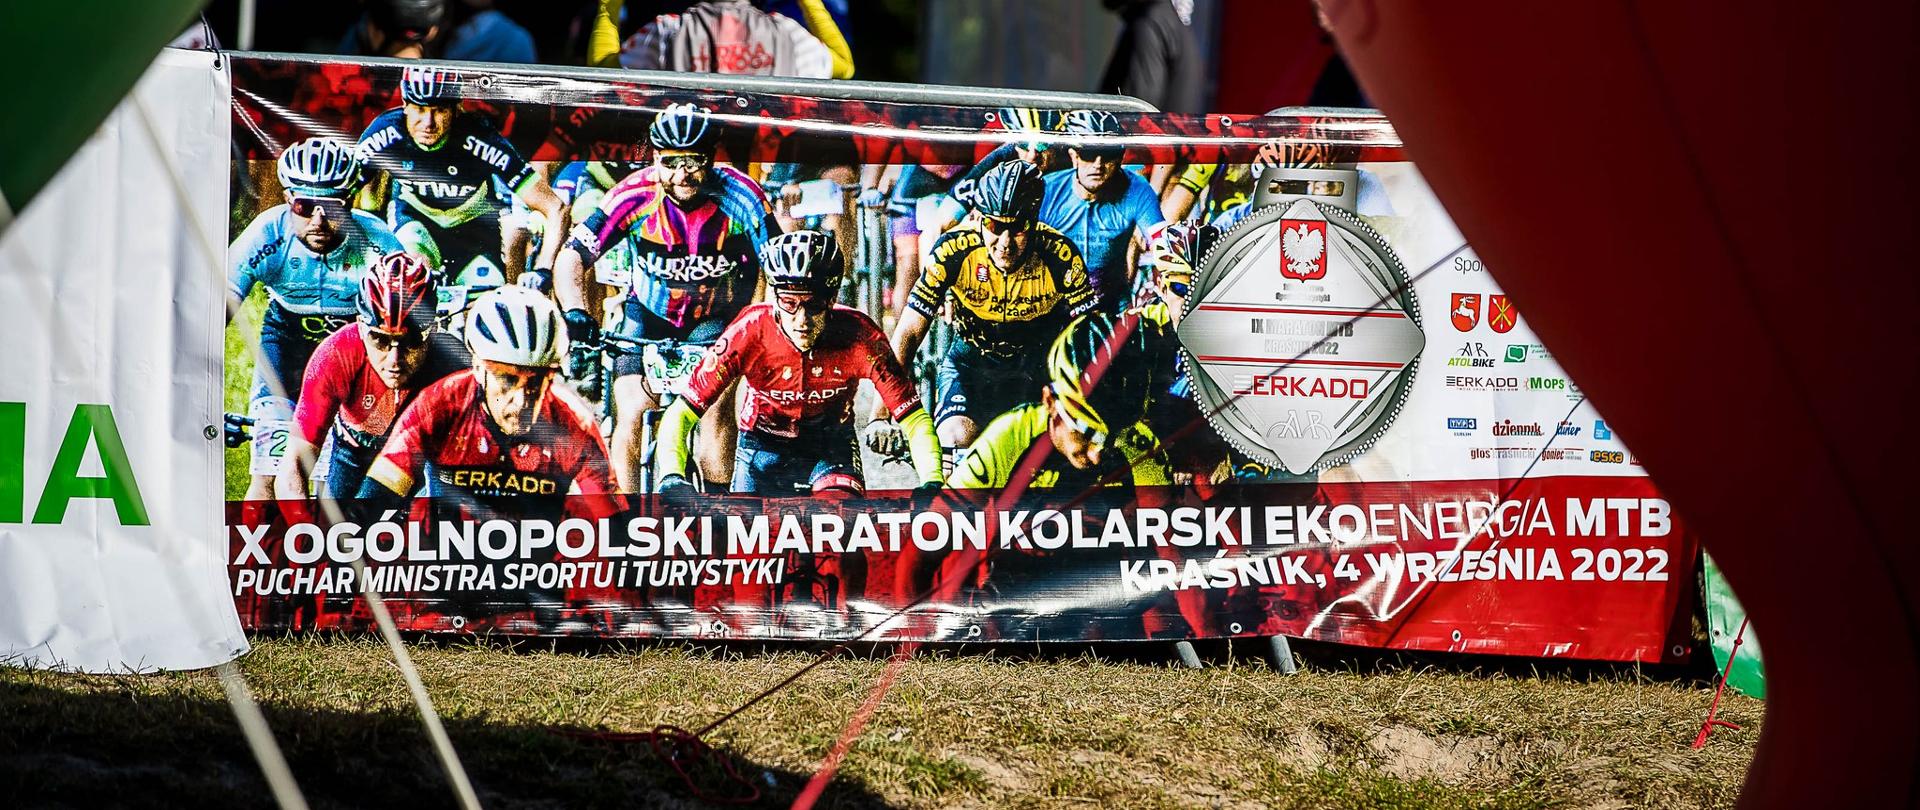 X Ogólnopolski Maraton Kolarski MTB o Puchar Ministra Sportu i Turystyki w Kraśniku